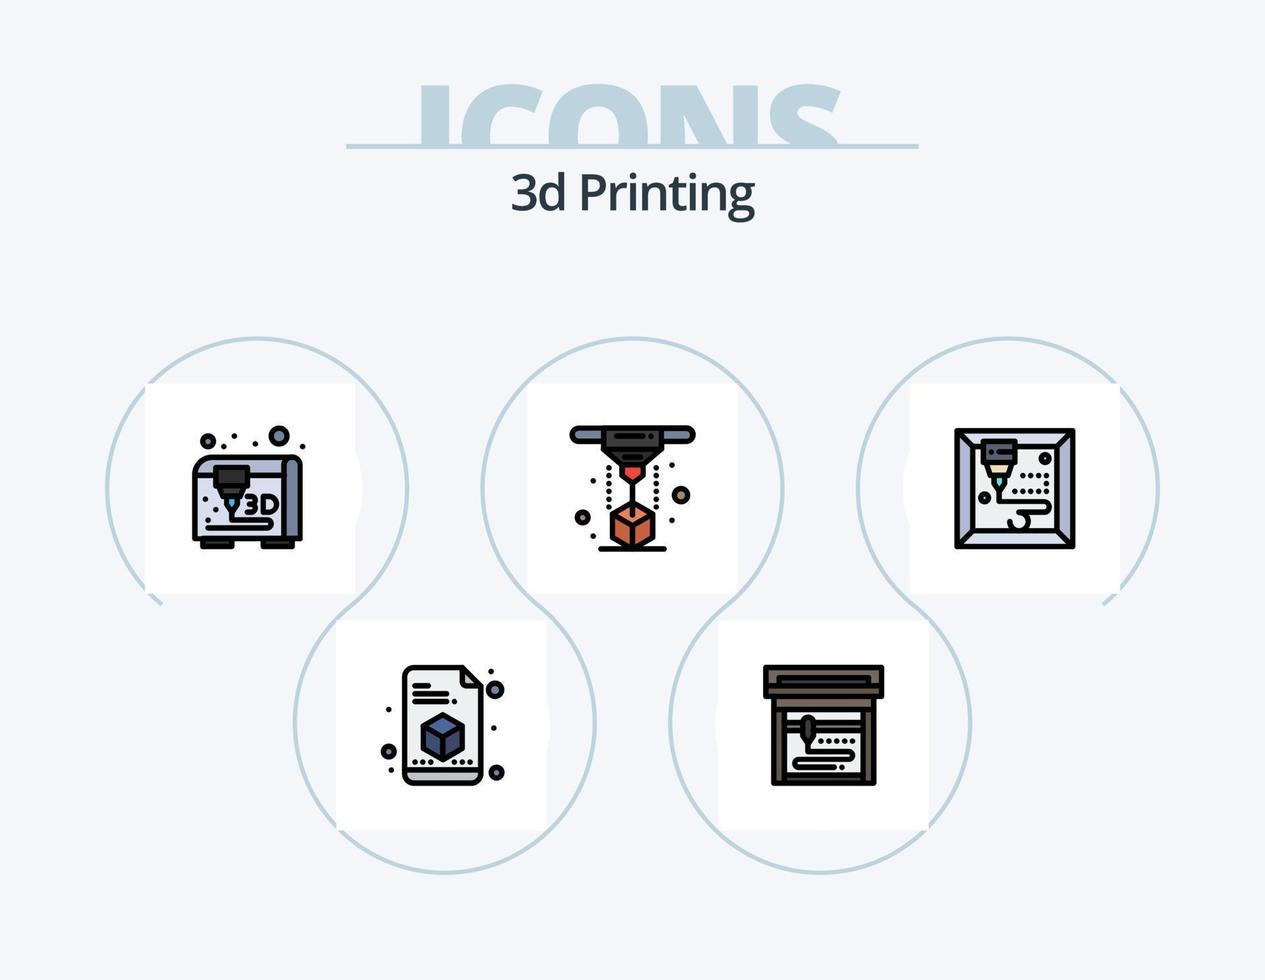 Línea de impresión 3d llena de diseño de iconos del paquete de iconos 5. impresora. escáner. 3d. impresión. d vector